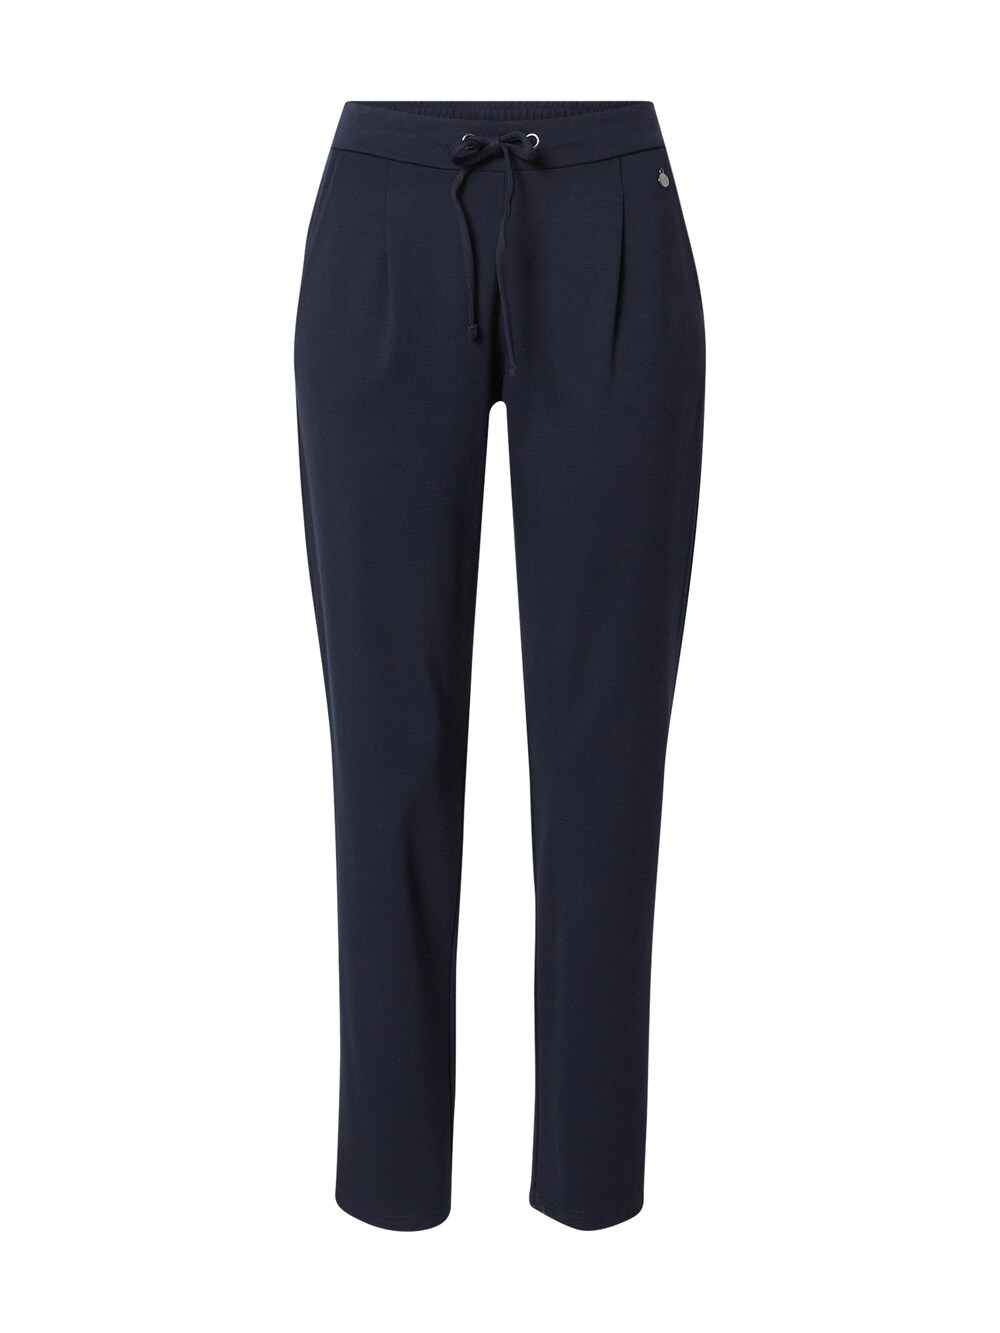 Обычные брюки со складками спереди Fransa, ночной синий узкие брюки со складками спереди fransa curve stretch коричневый